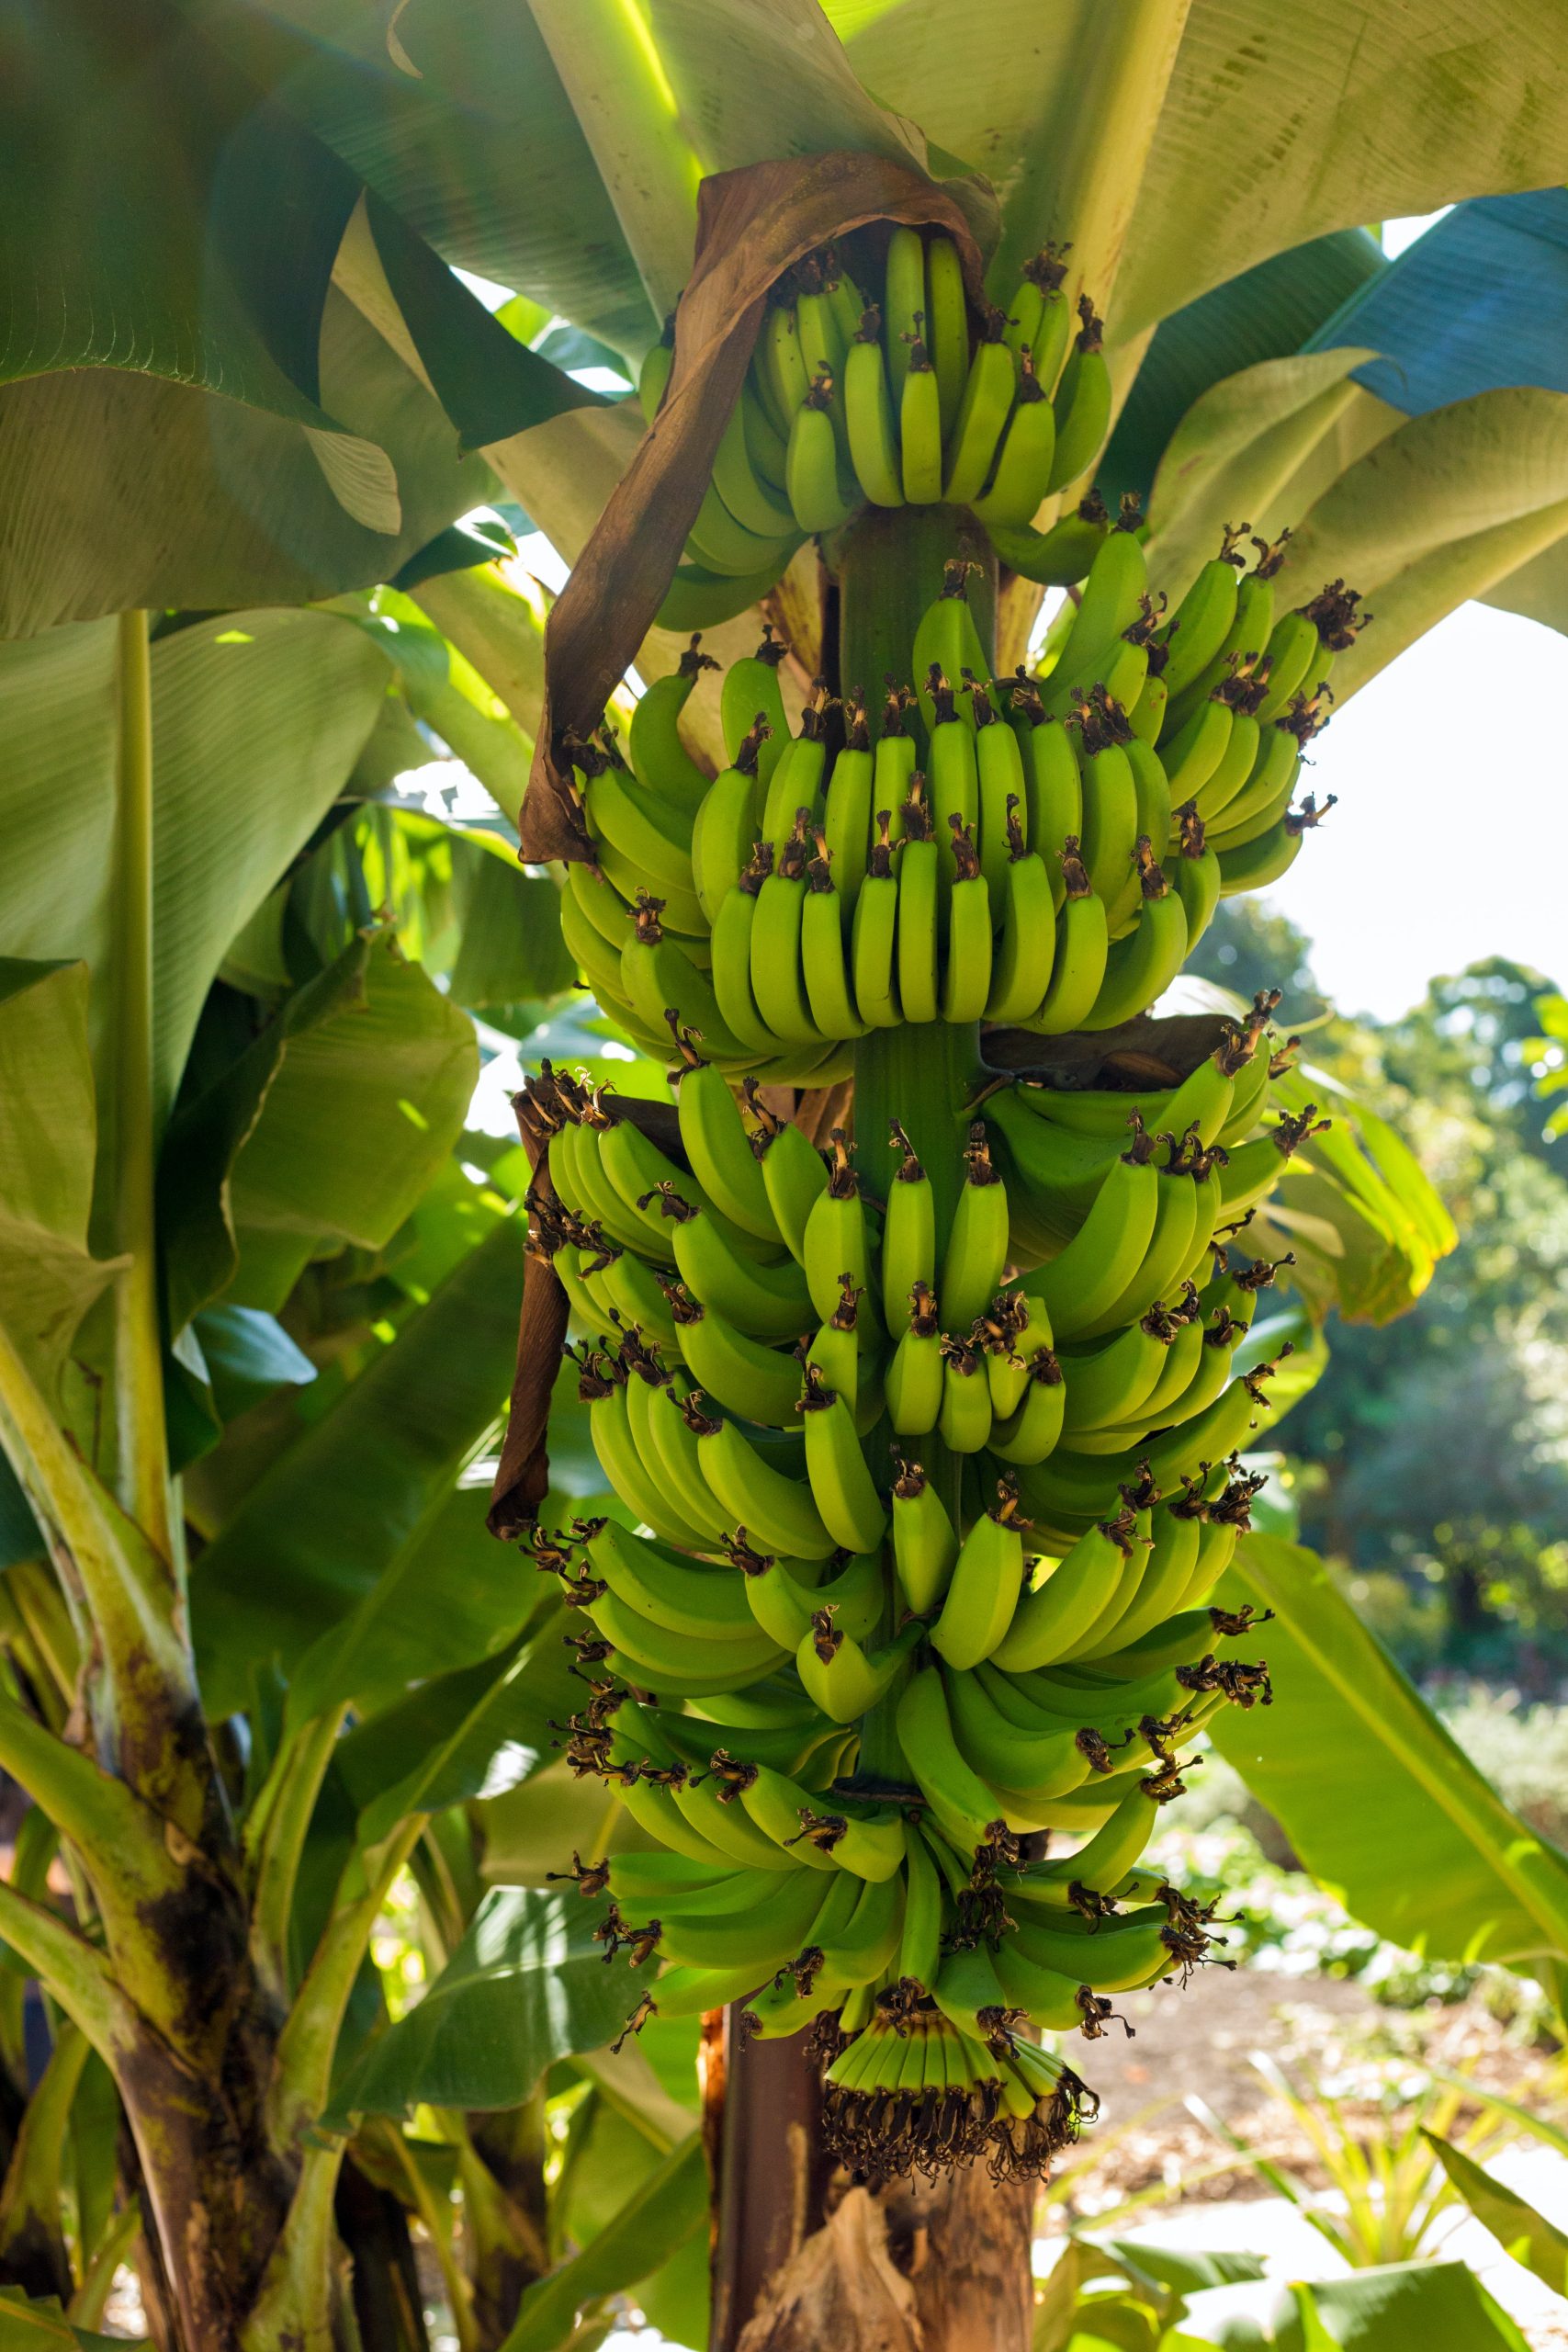 Do Bananas Grow On Trees?